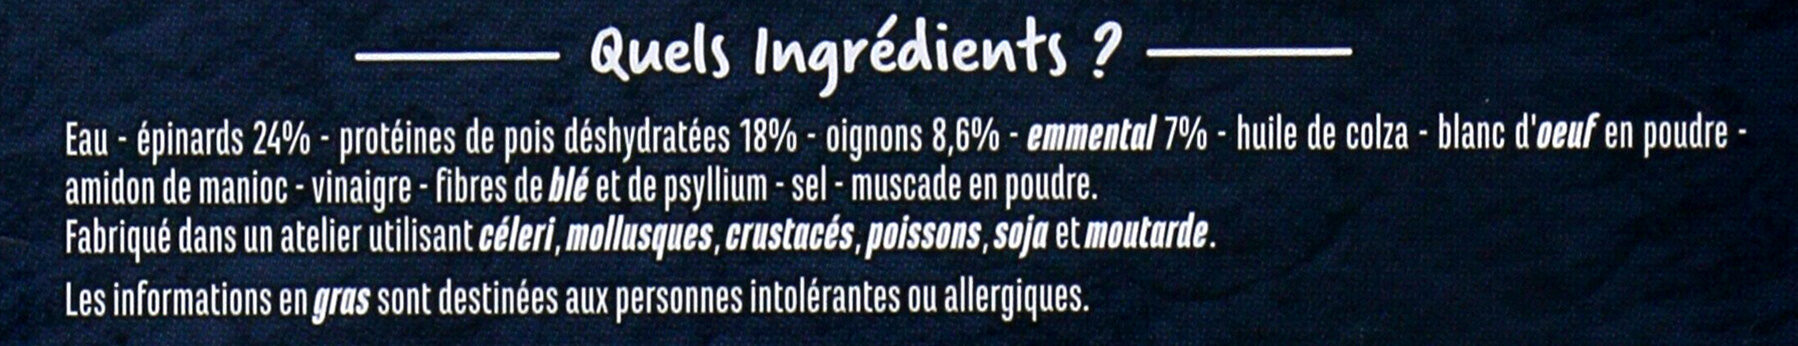 Galettes aux épinards et à l'emmental - Ingredienser - fr